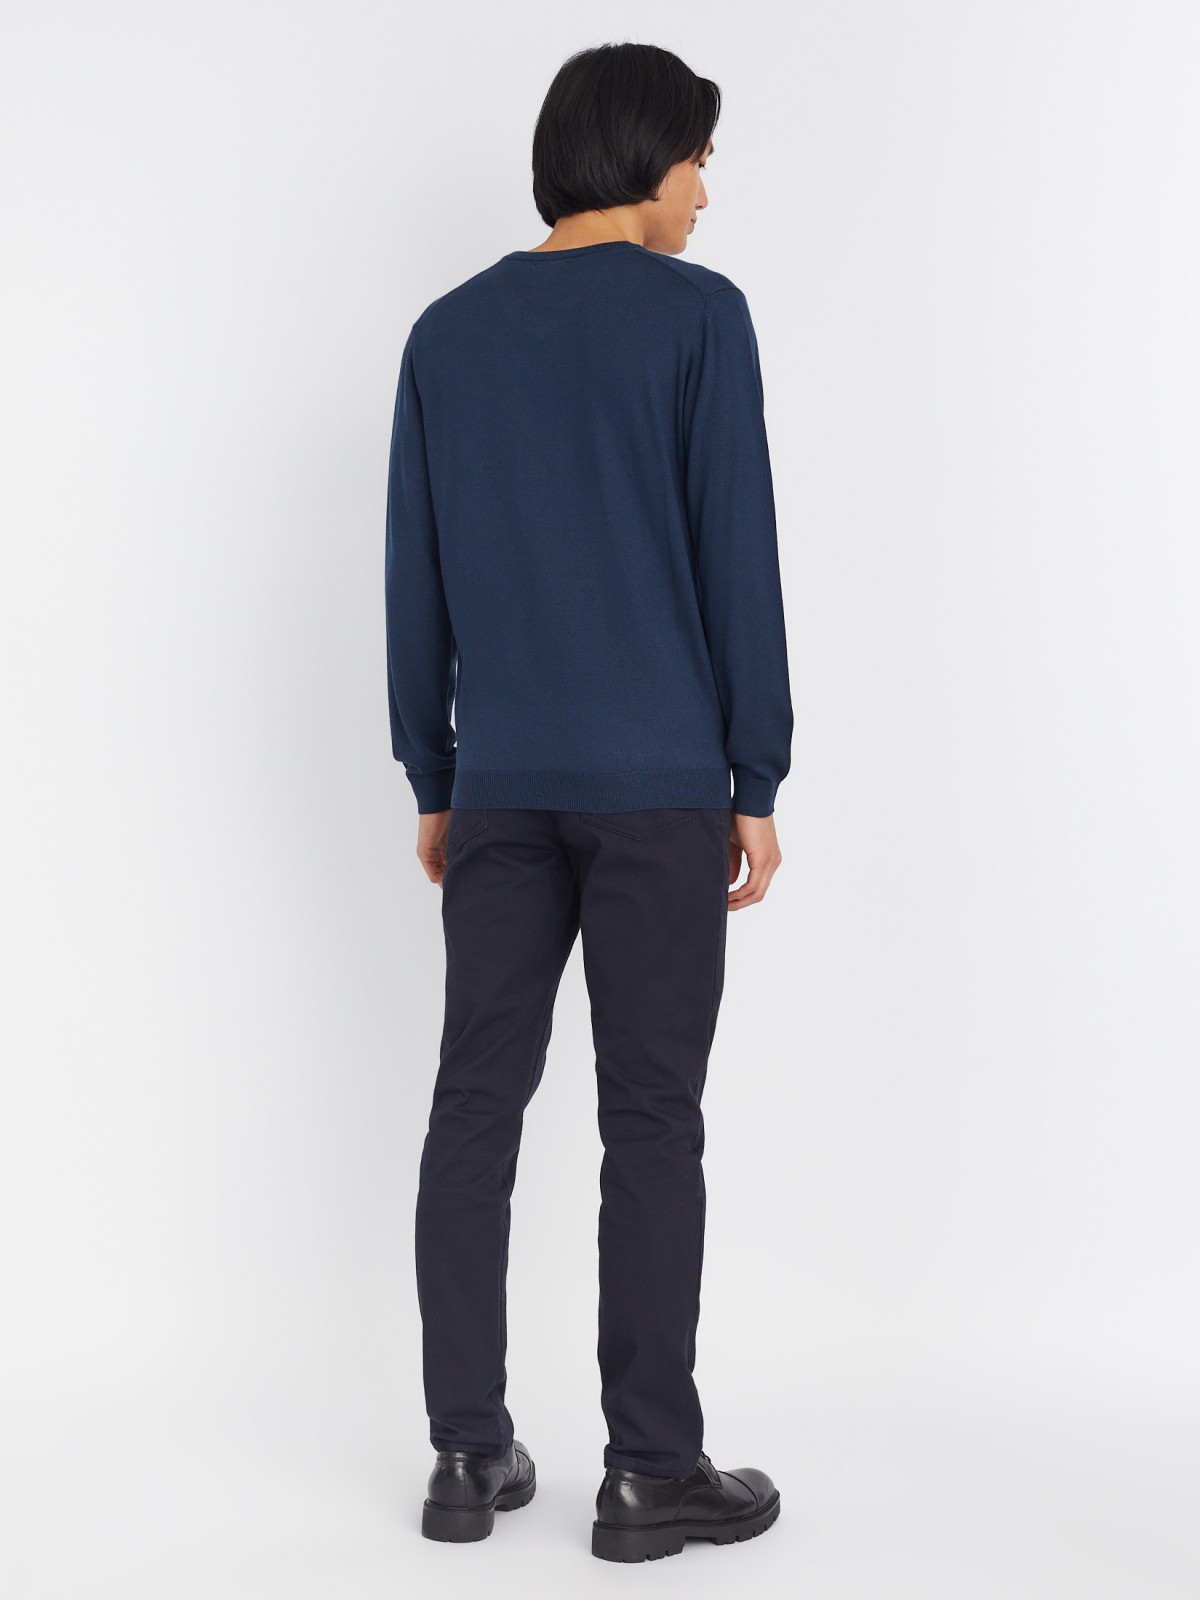 Шерстяной трикотажный пуловер с треугольным вырезом и длинным рукавом zolla 013346163042, цвет синий, размер M - фото 6